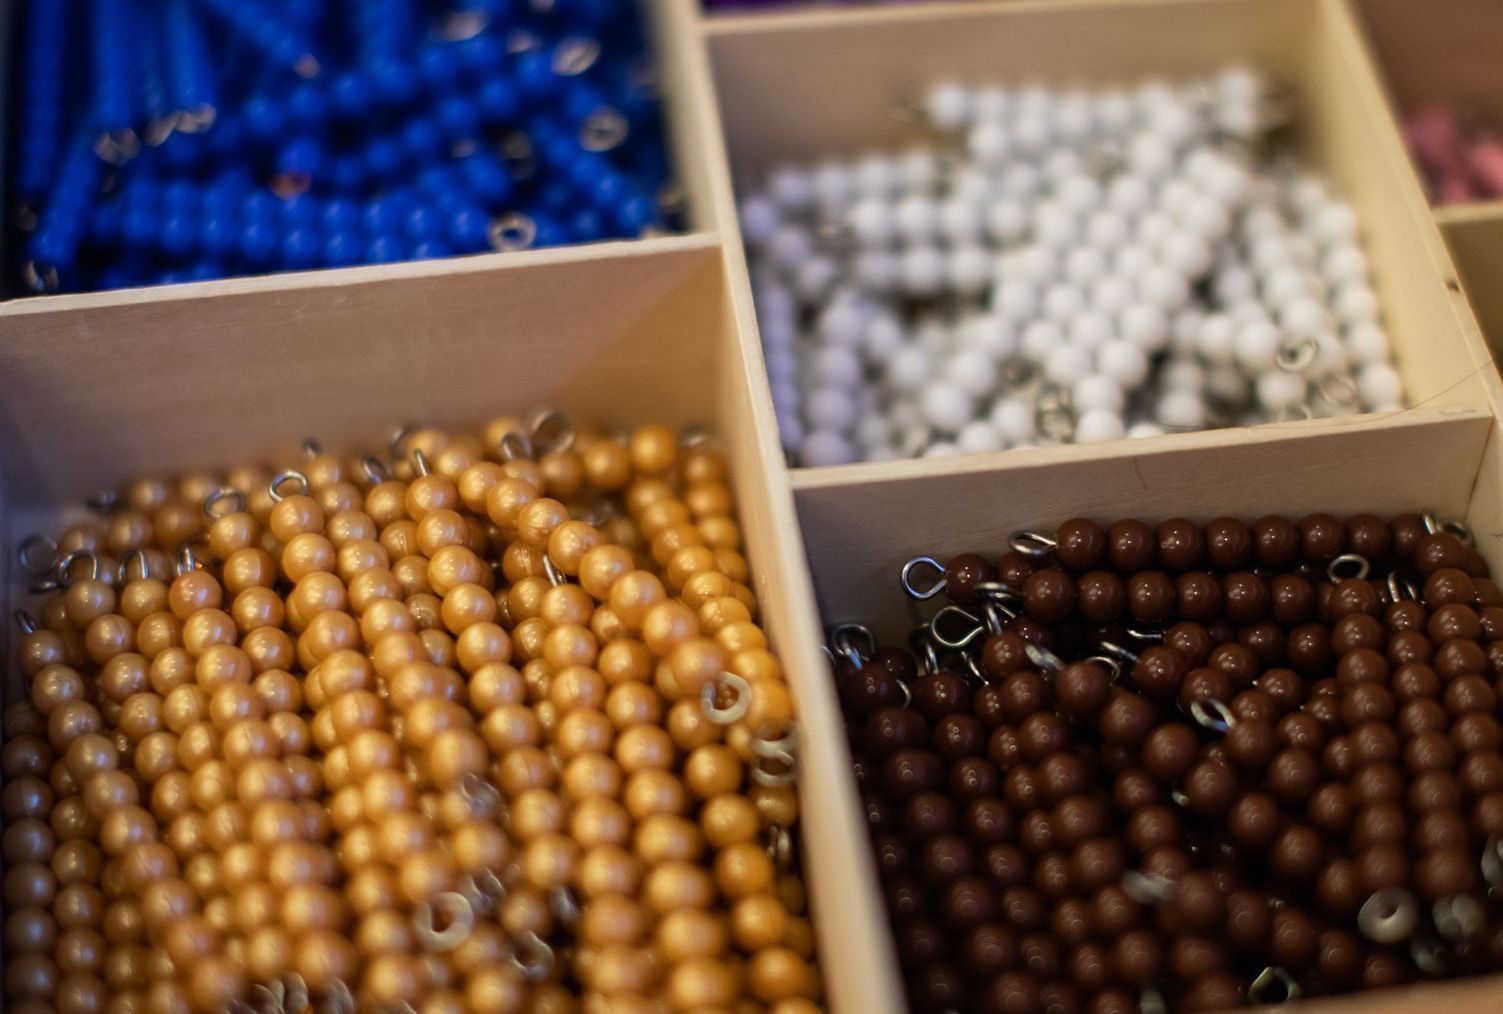 Montessori math beads material